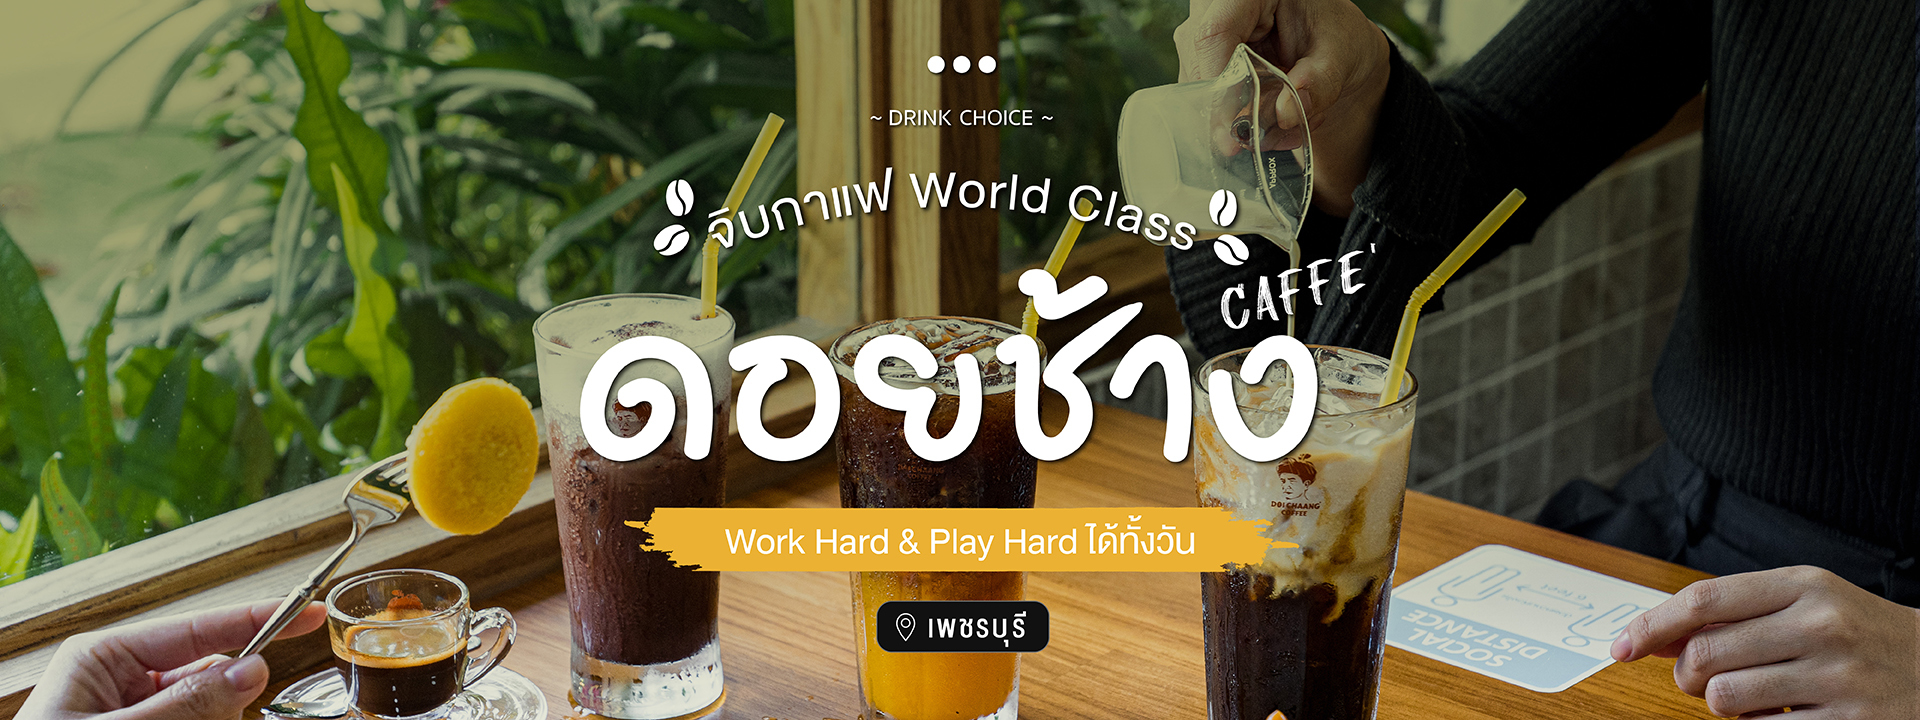 จิบกาแฟ World Class l Work Hard & Play Hard ได้ทั้งวัน @ ดอยช้าง คาเฟ่ (DOI Chaang caffè) จ.เพชรบุรี